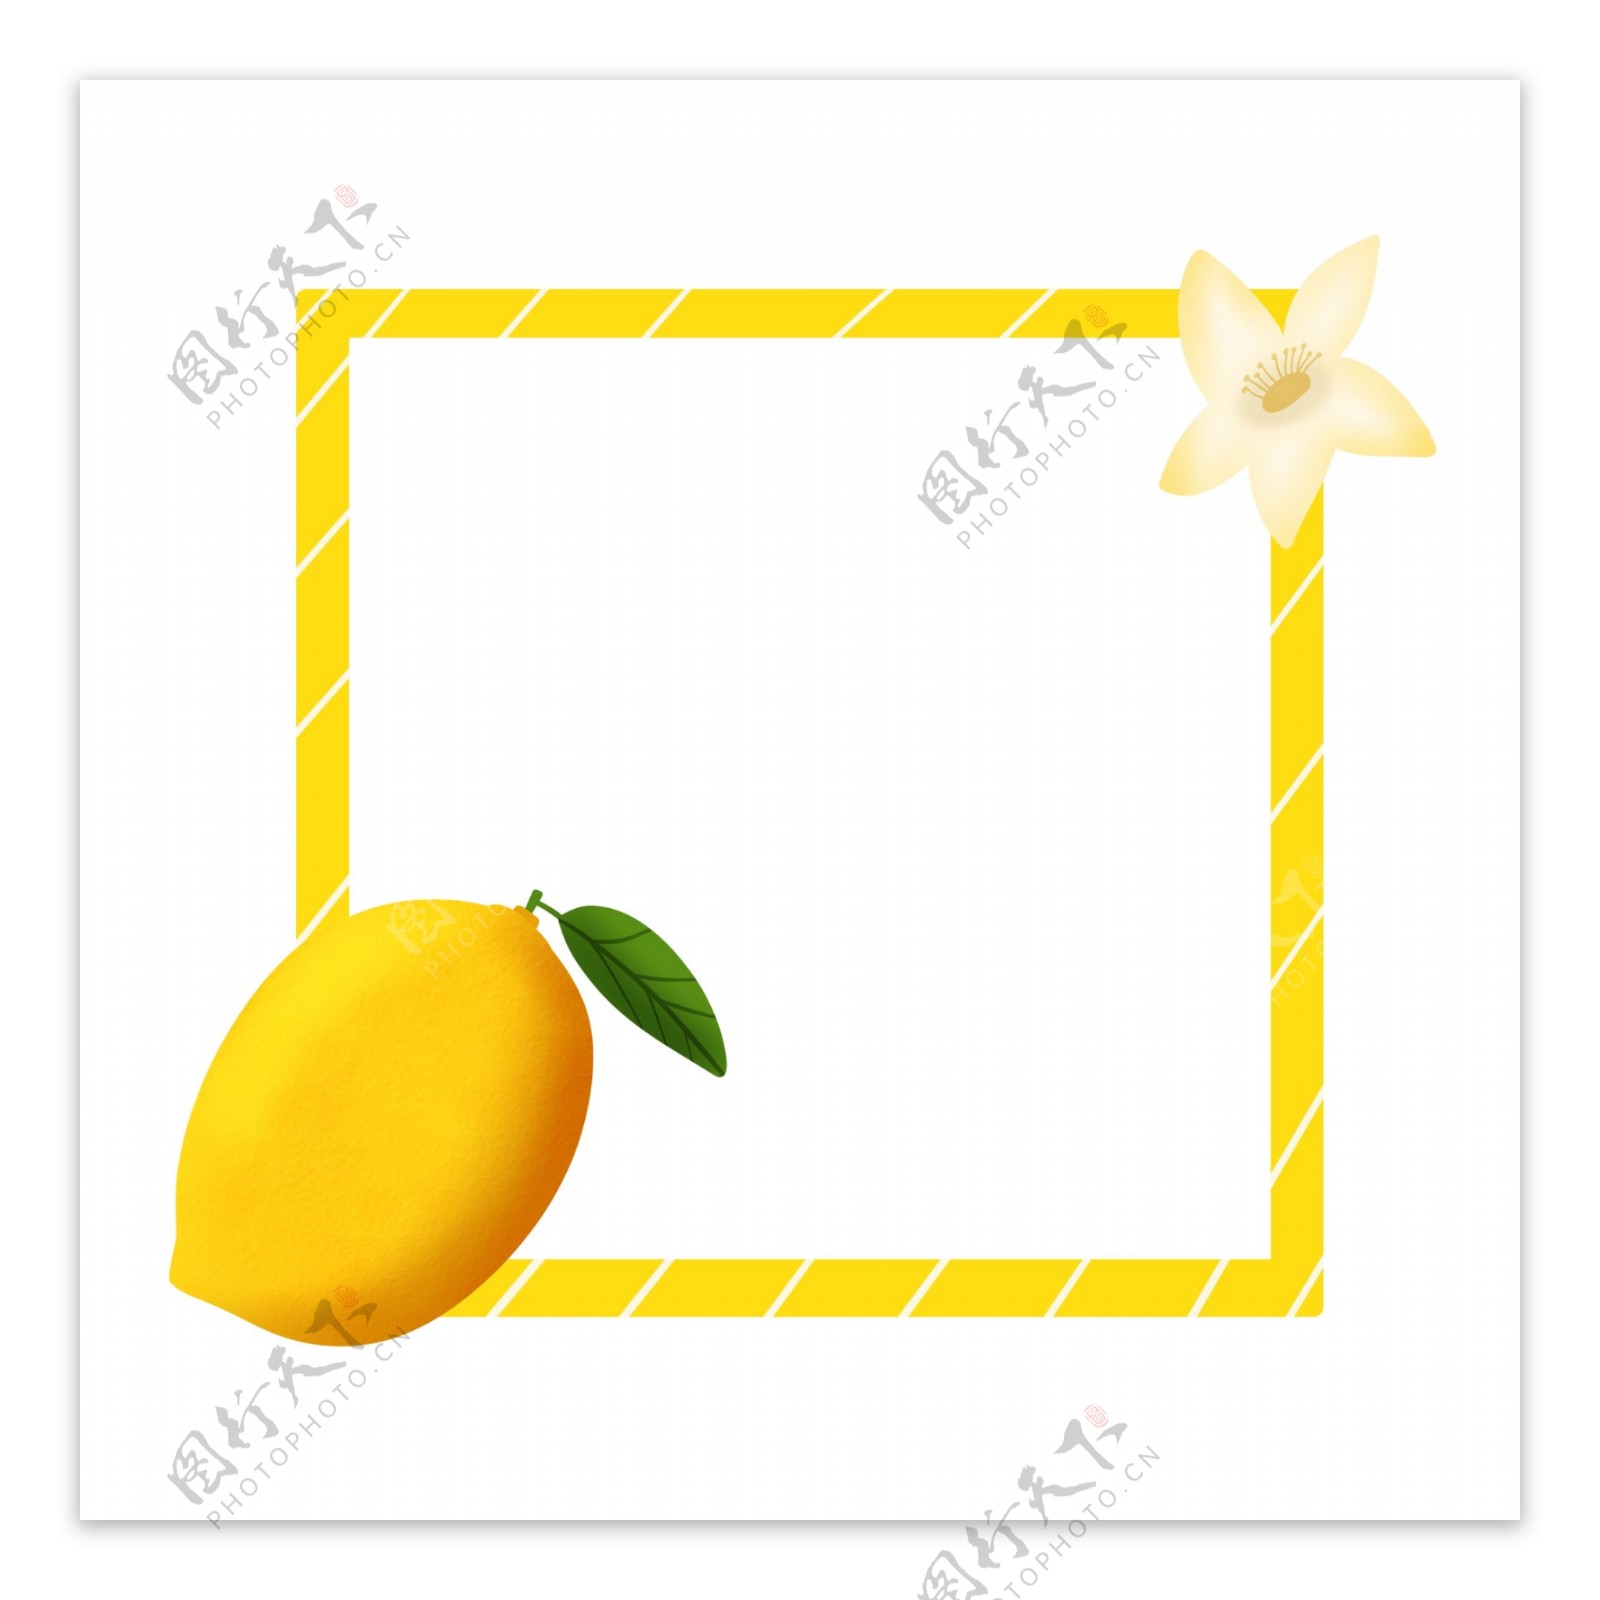 夏季清新柠檬水果边框